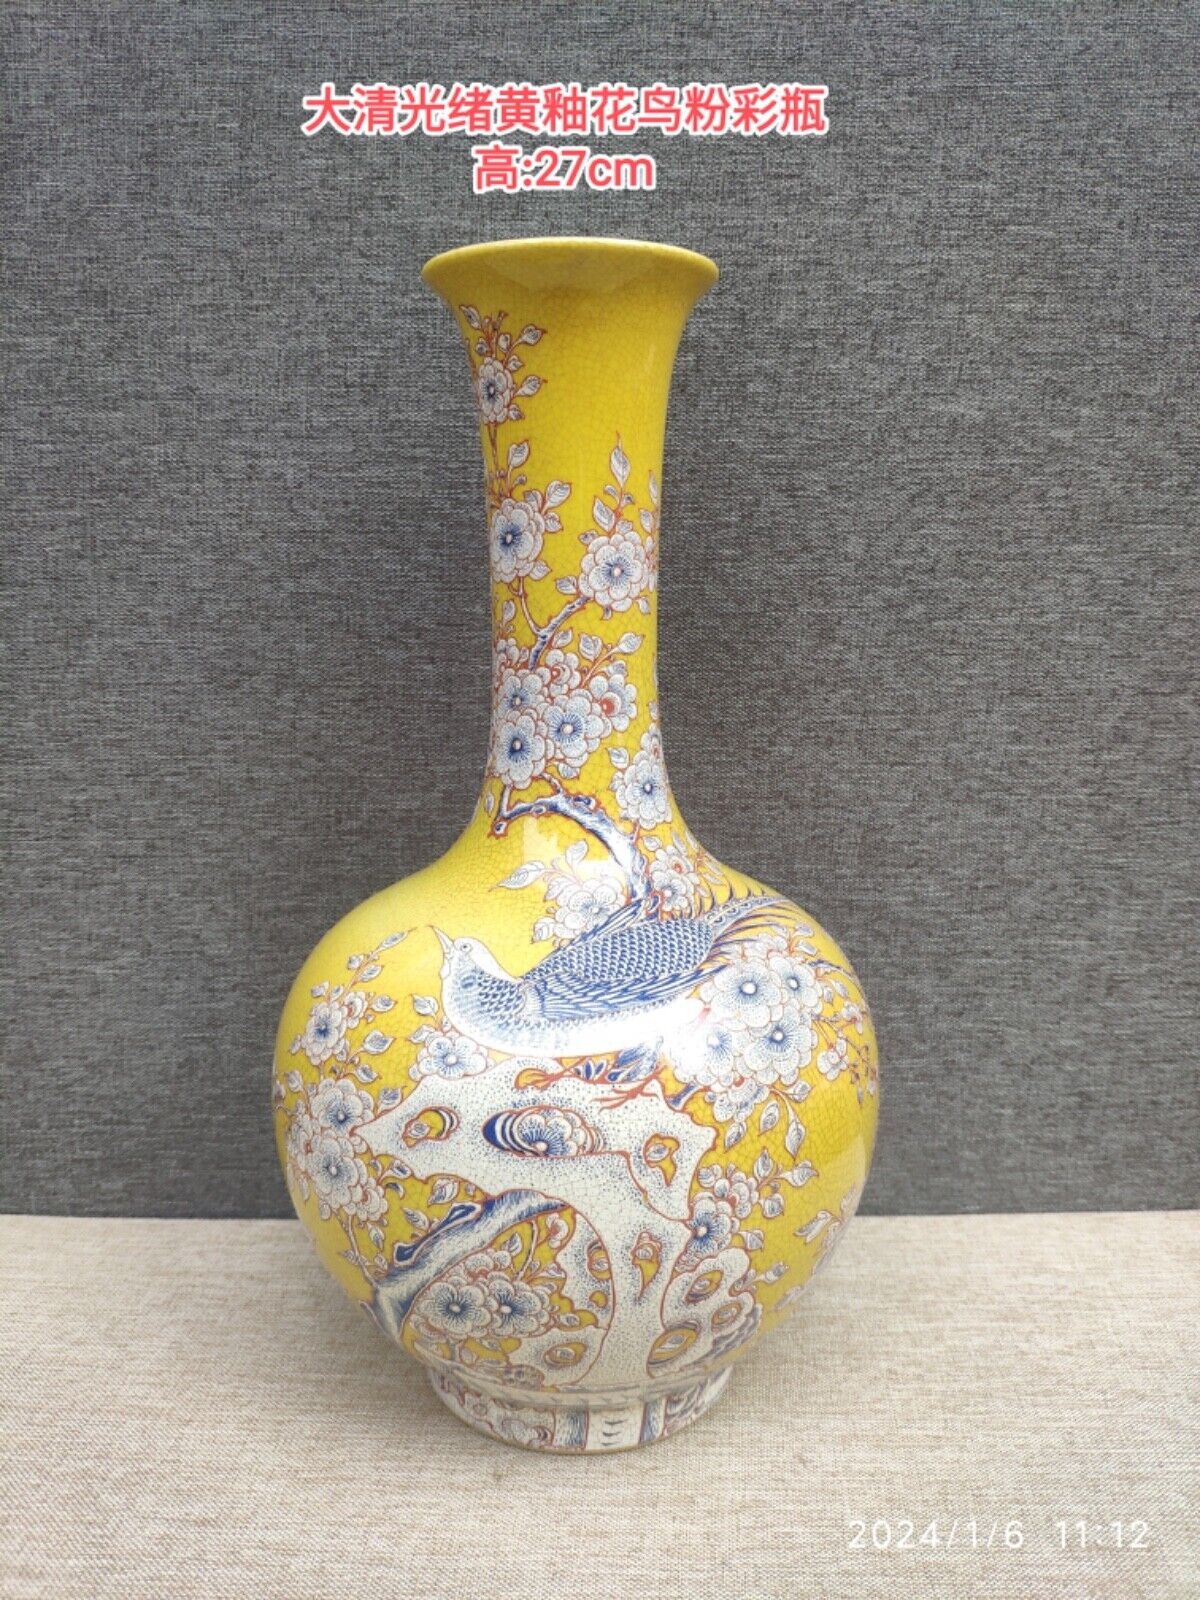 Qing GiuangXu Floral & Bird Porcelain Vase Video